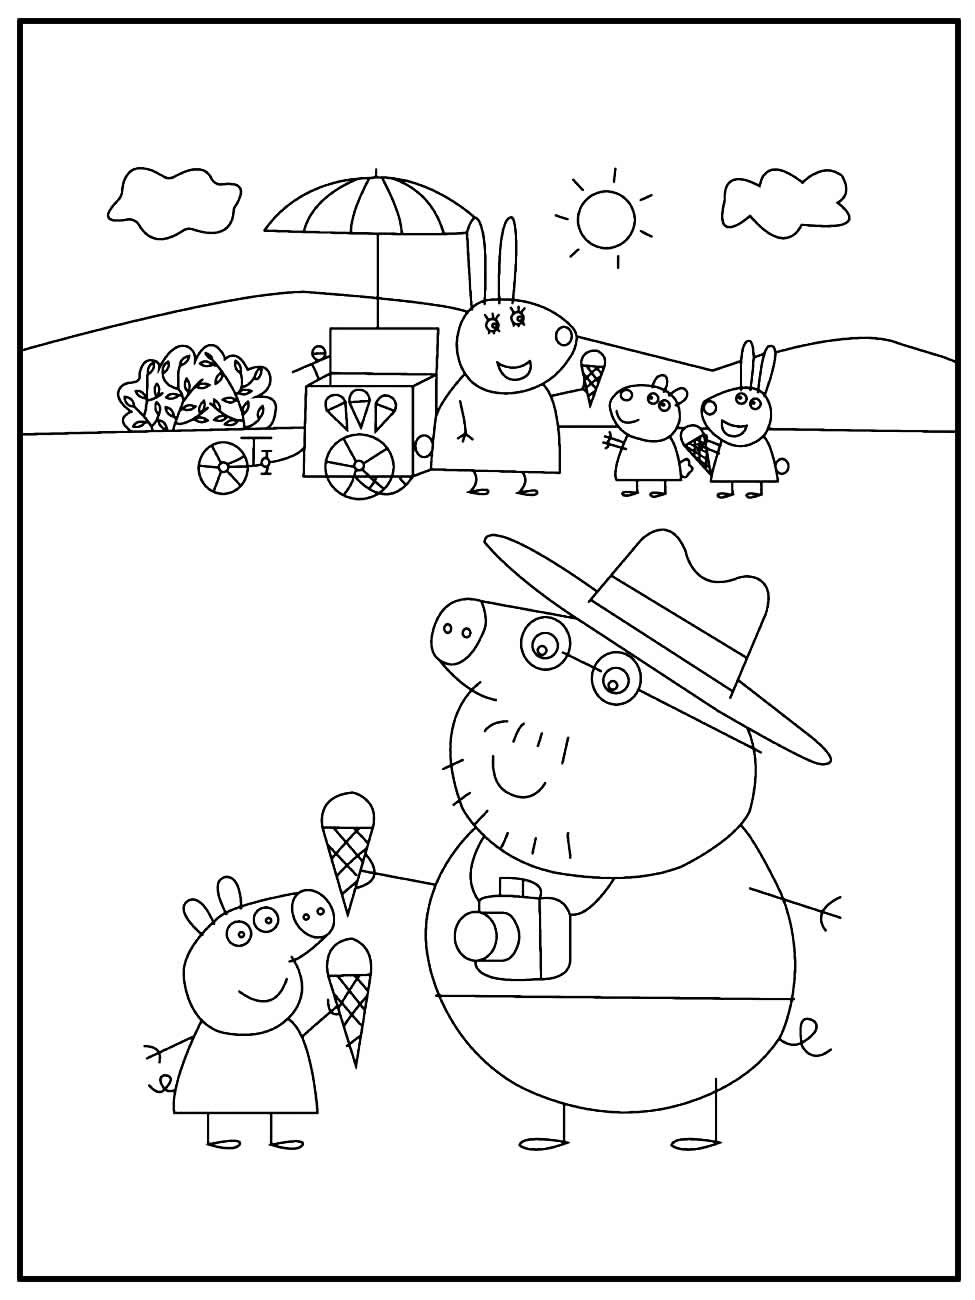 Página para colorir da Peppa Pig